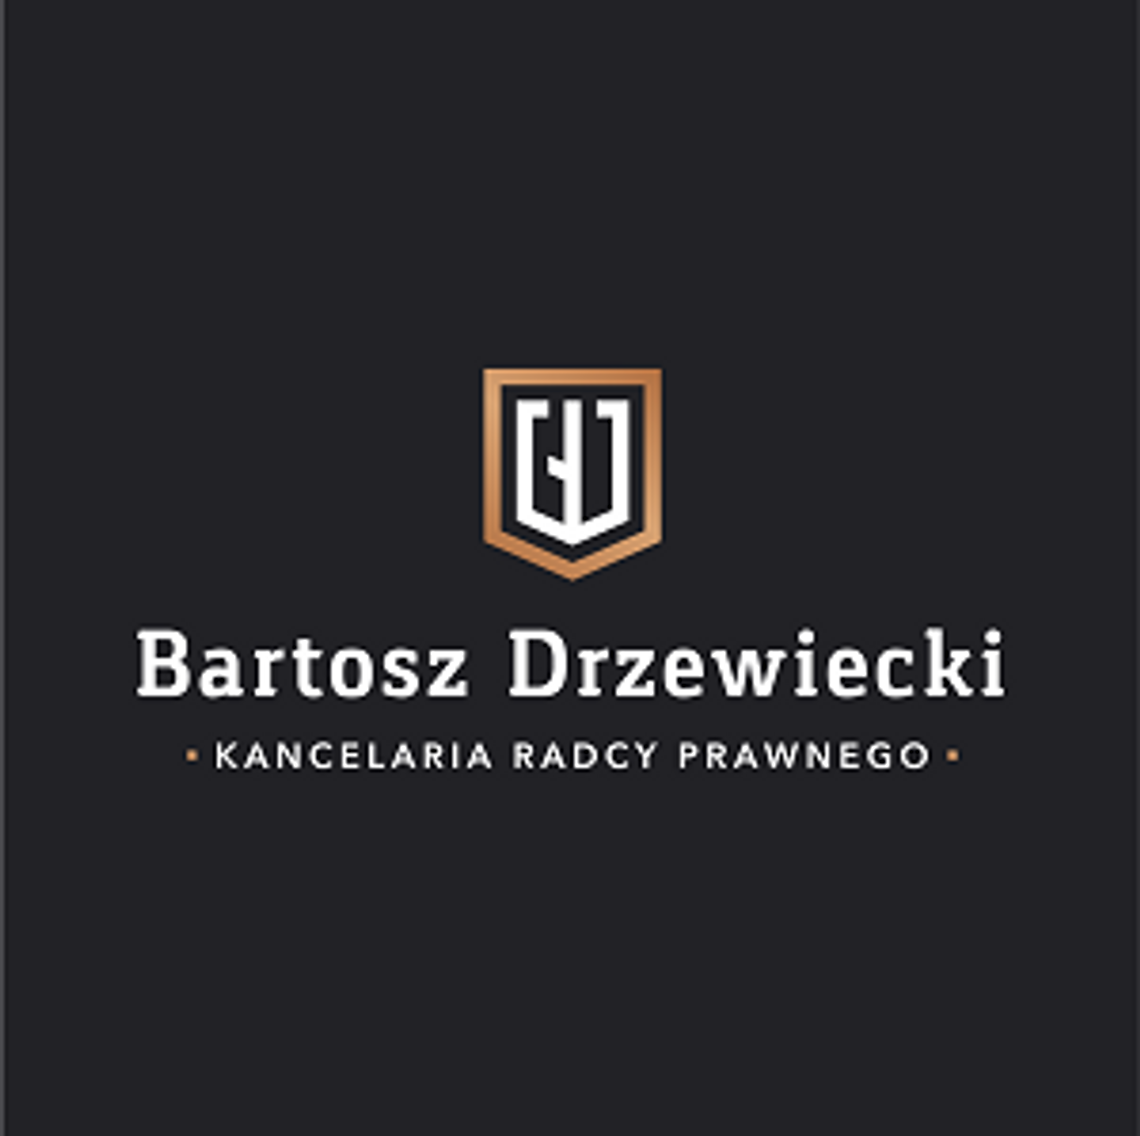 Kancelaria Radcy Prawnego Bartosz Drzewiecki